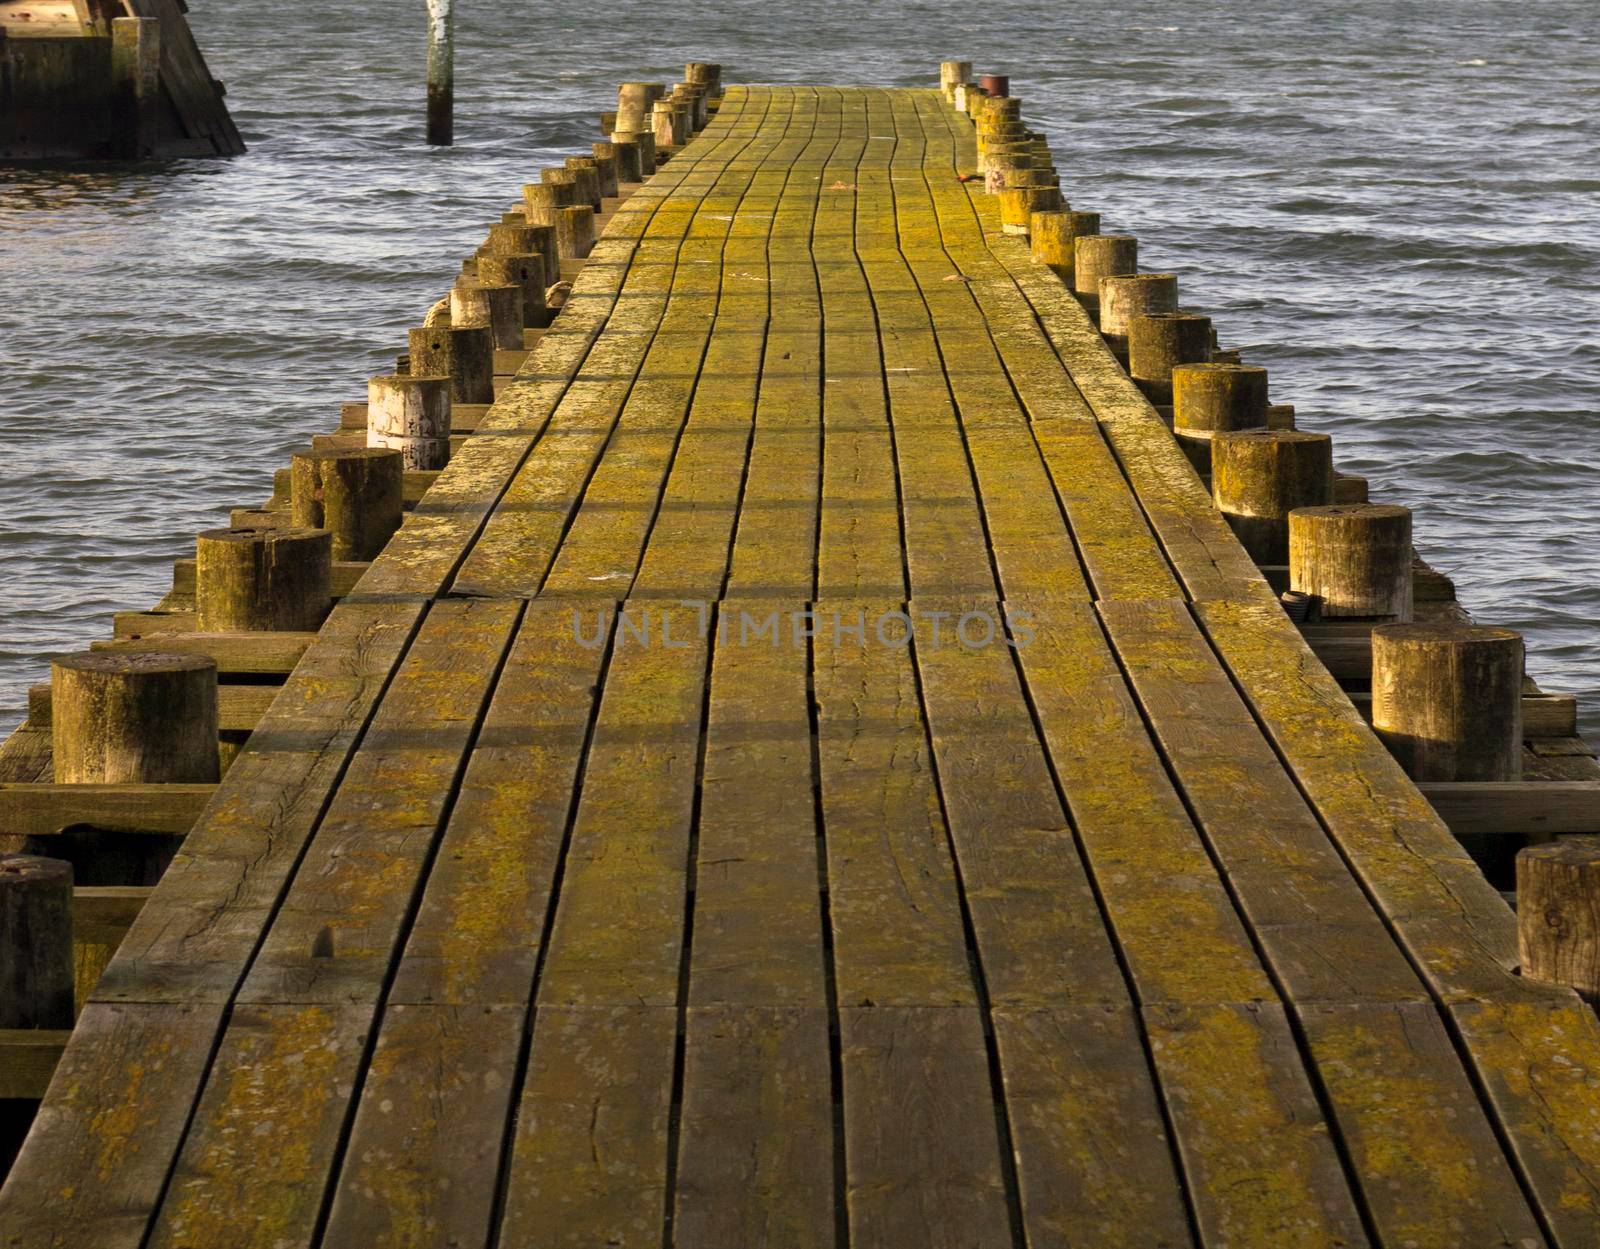 Pier walkway by Lirch